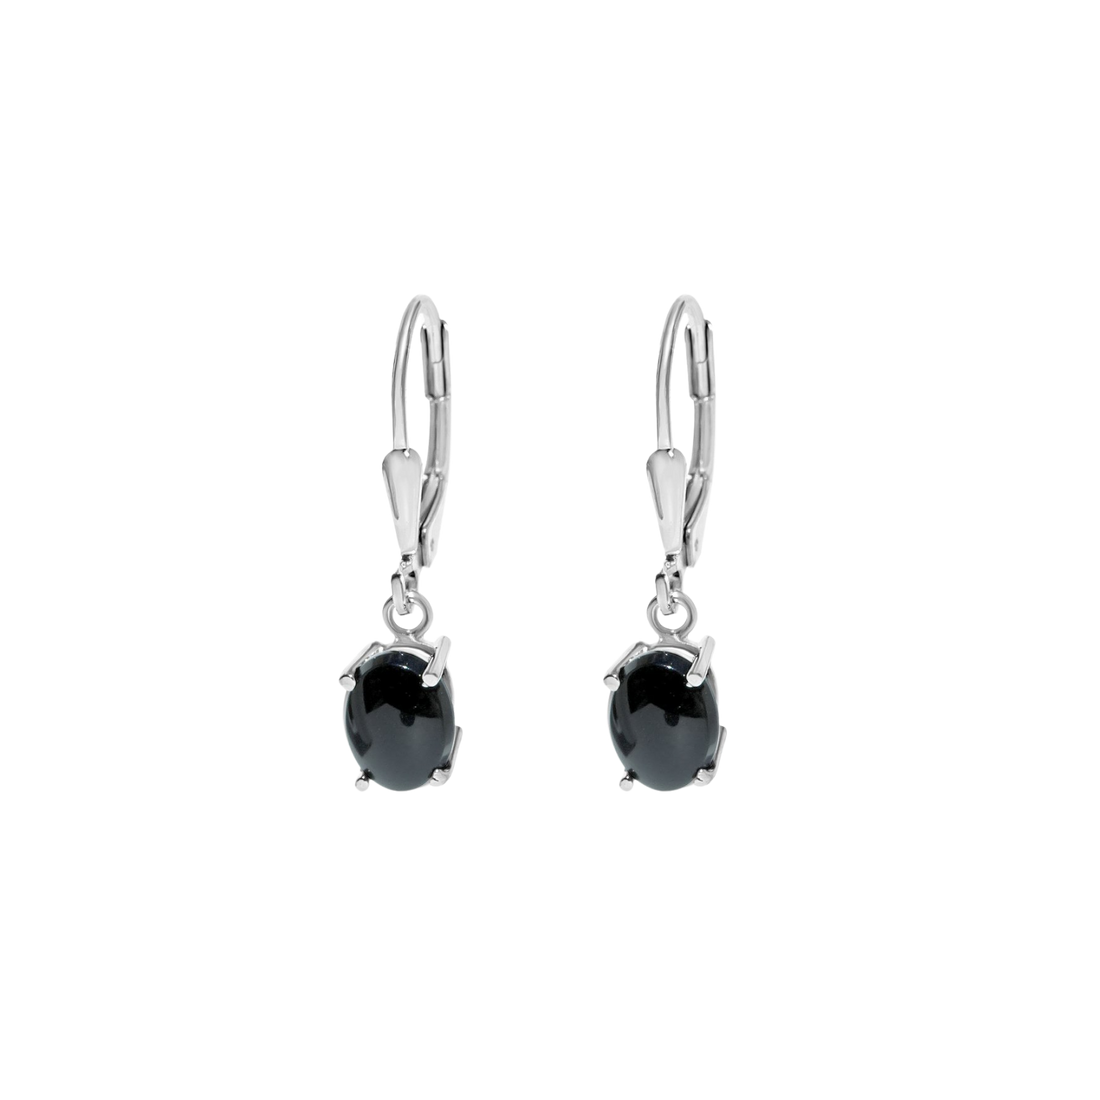 silver onyx earrings canada, dangling onyx earrings, silver dangle onyx earrings canada